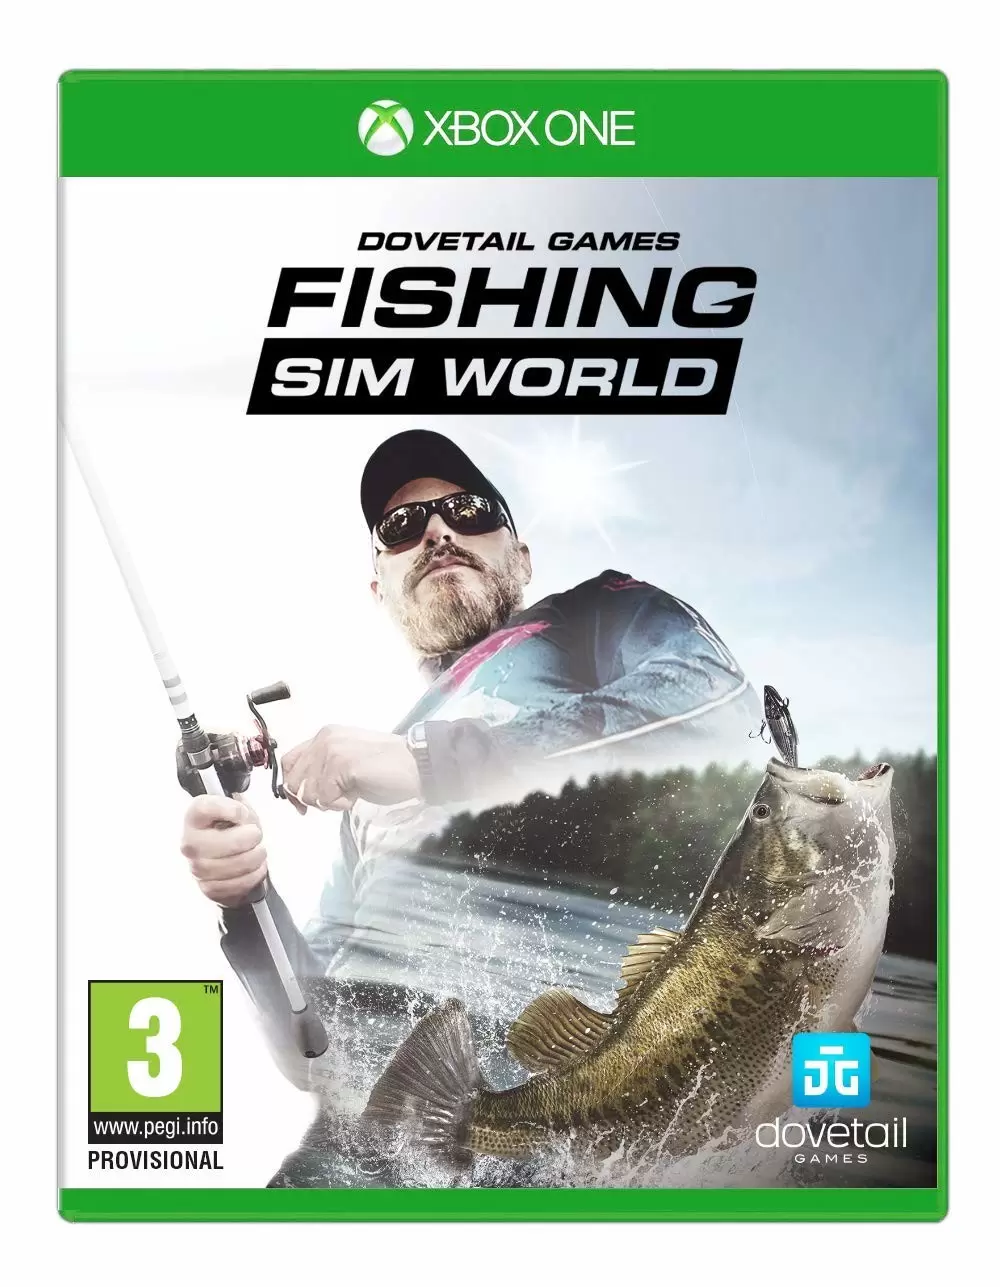 XBOX One Games - Fishing Sim World